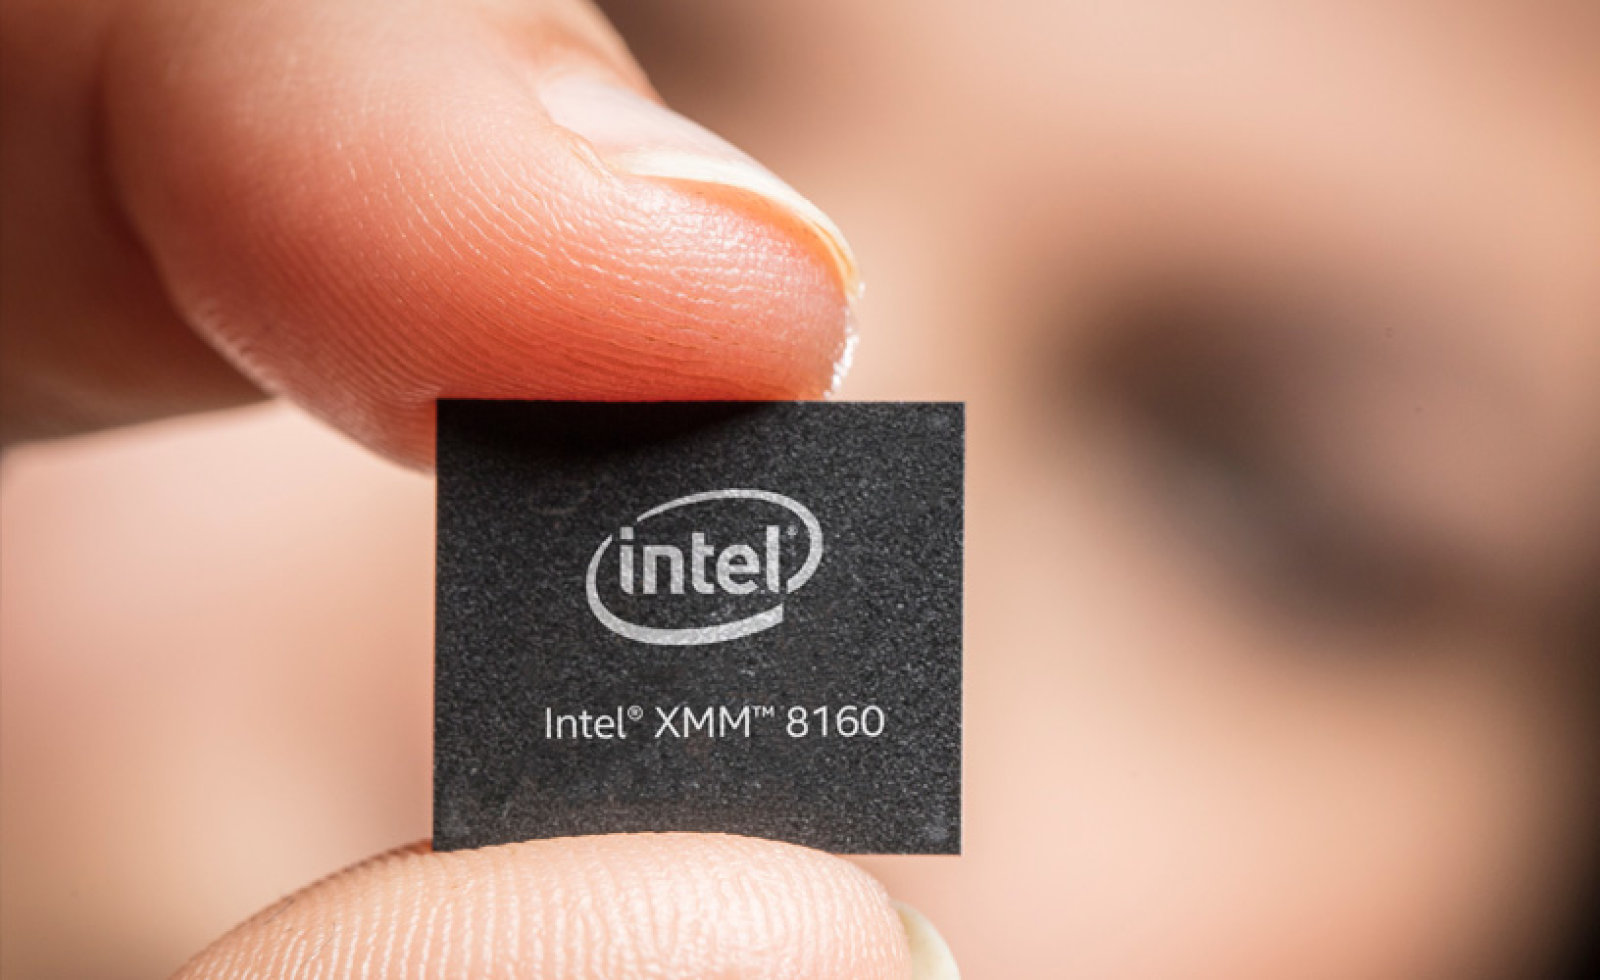 Apple hiện đang sở hữu mảng kinh doanh modem di động của Intel